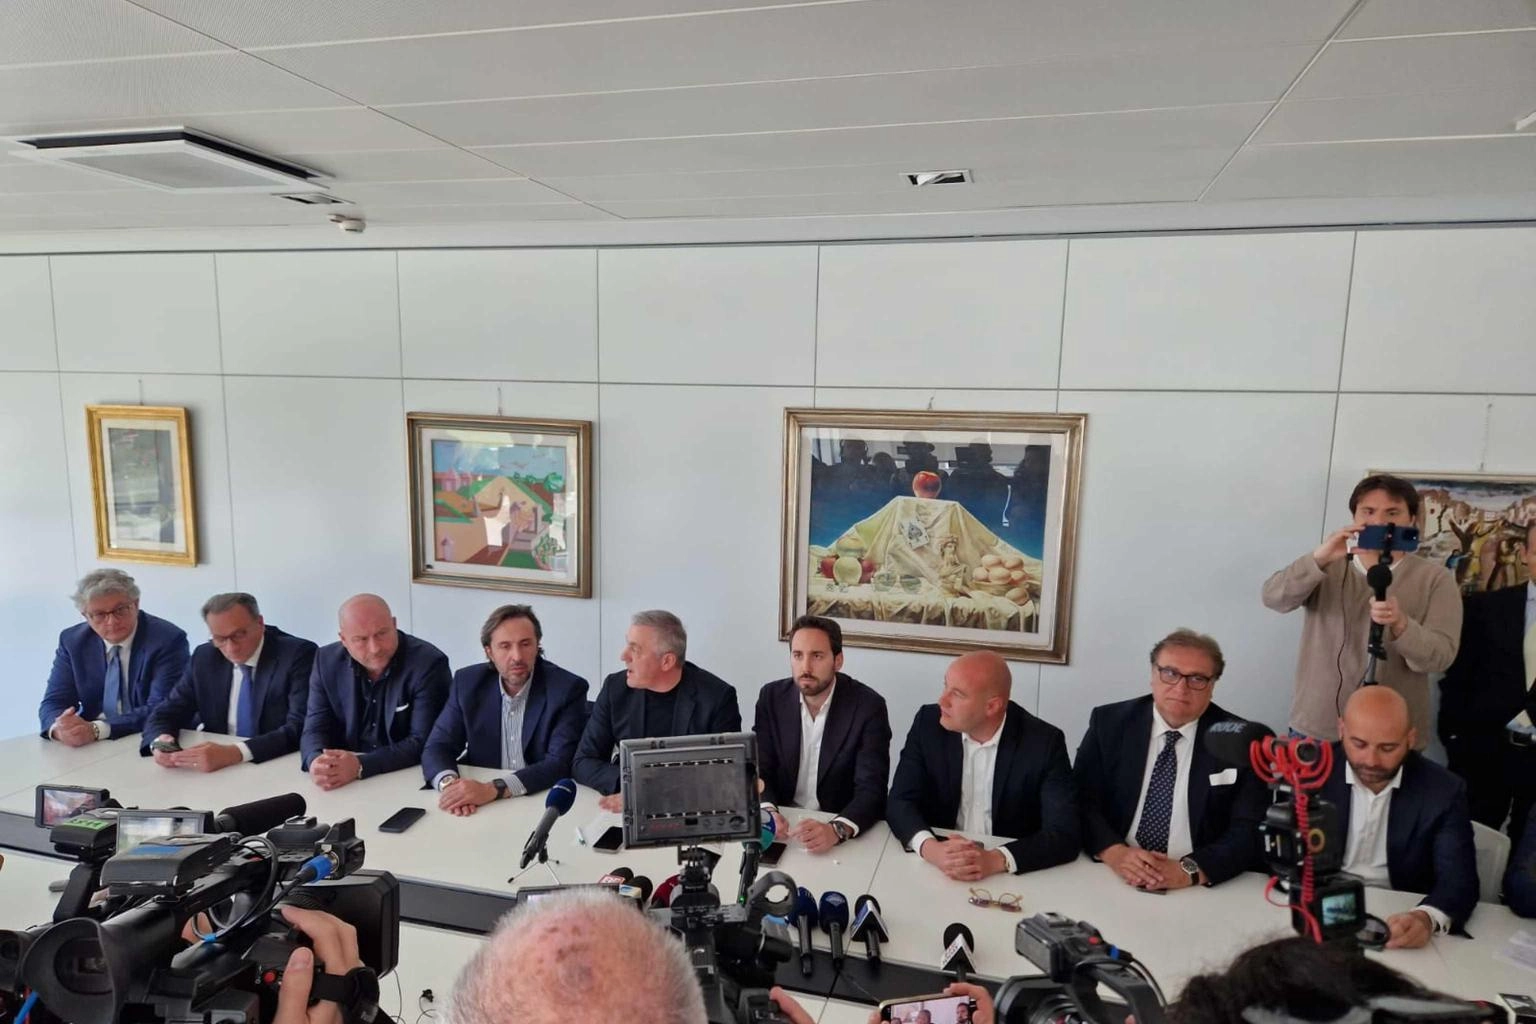 Centrodestra Puglia annuncia mozione sfiducia su Emiliano